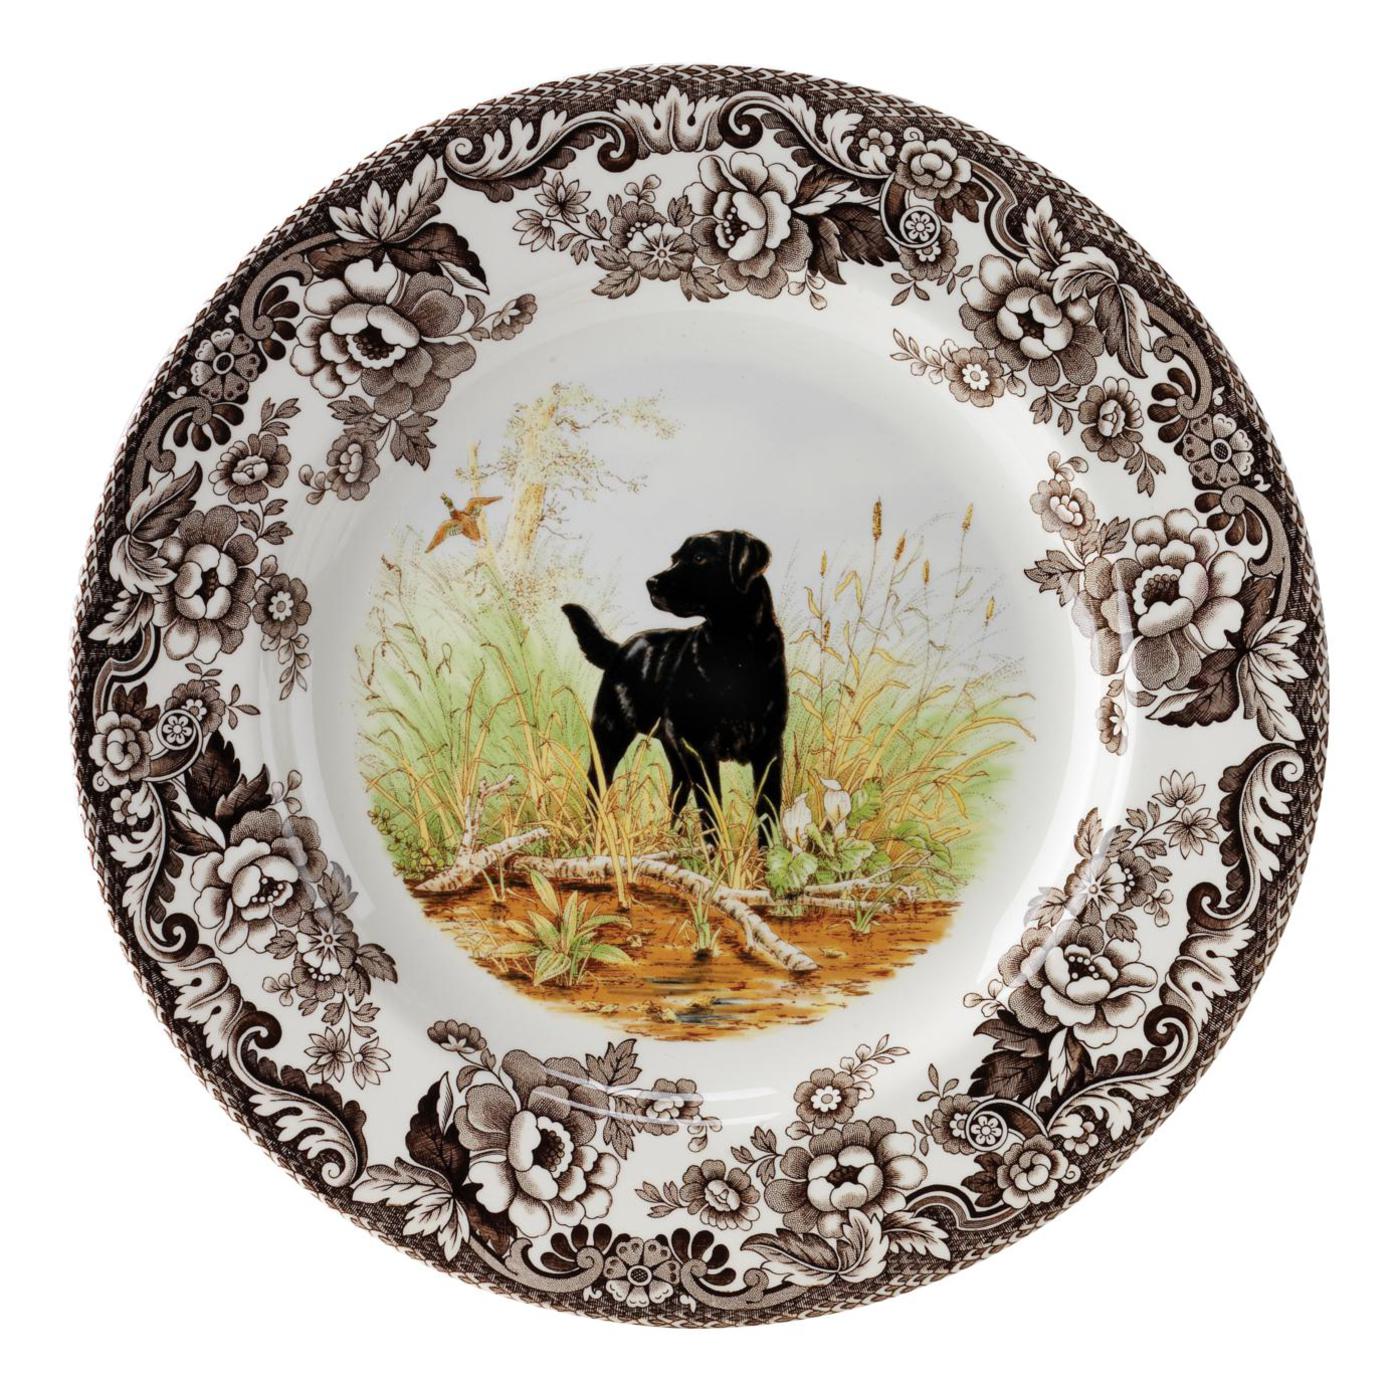 Spode Woodland Dinner Plate, Black Labrador Retriever